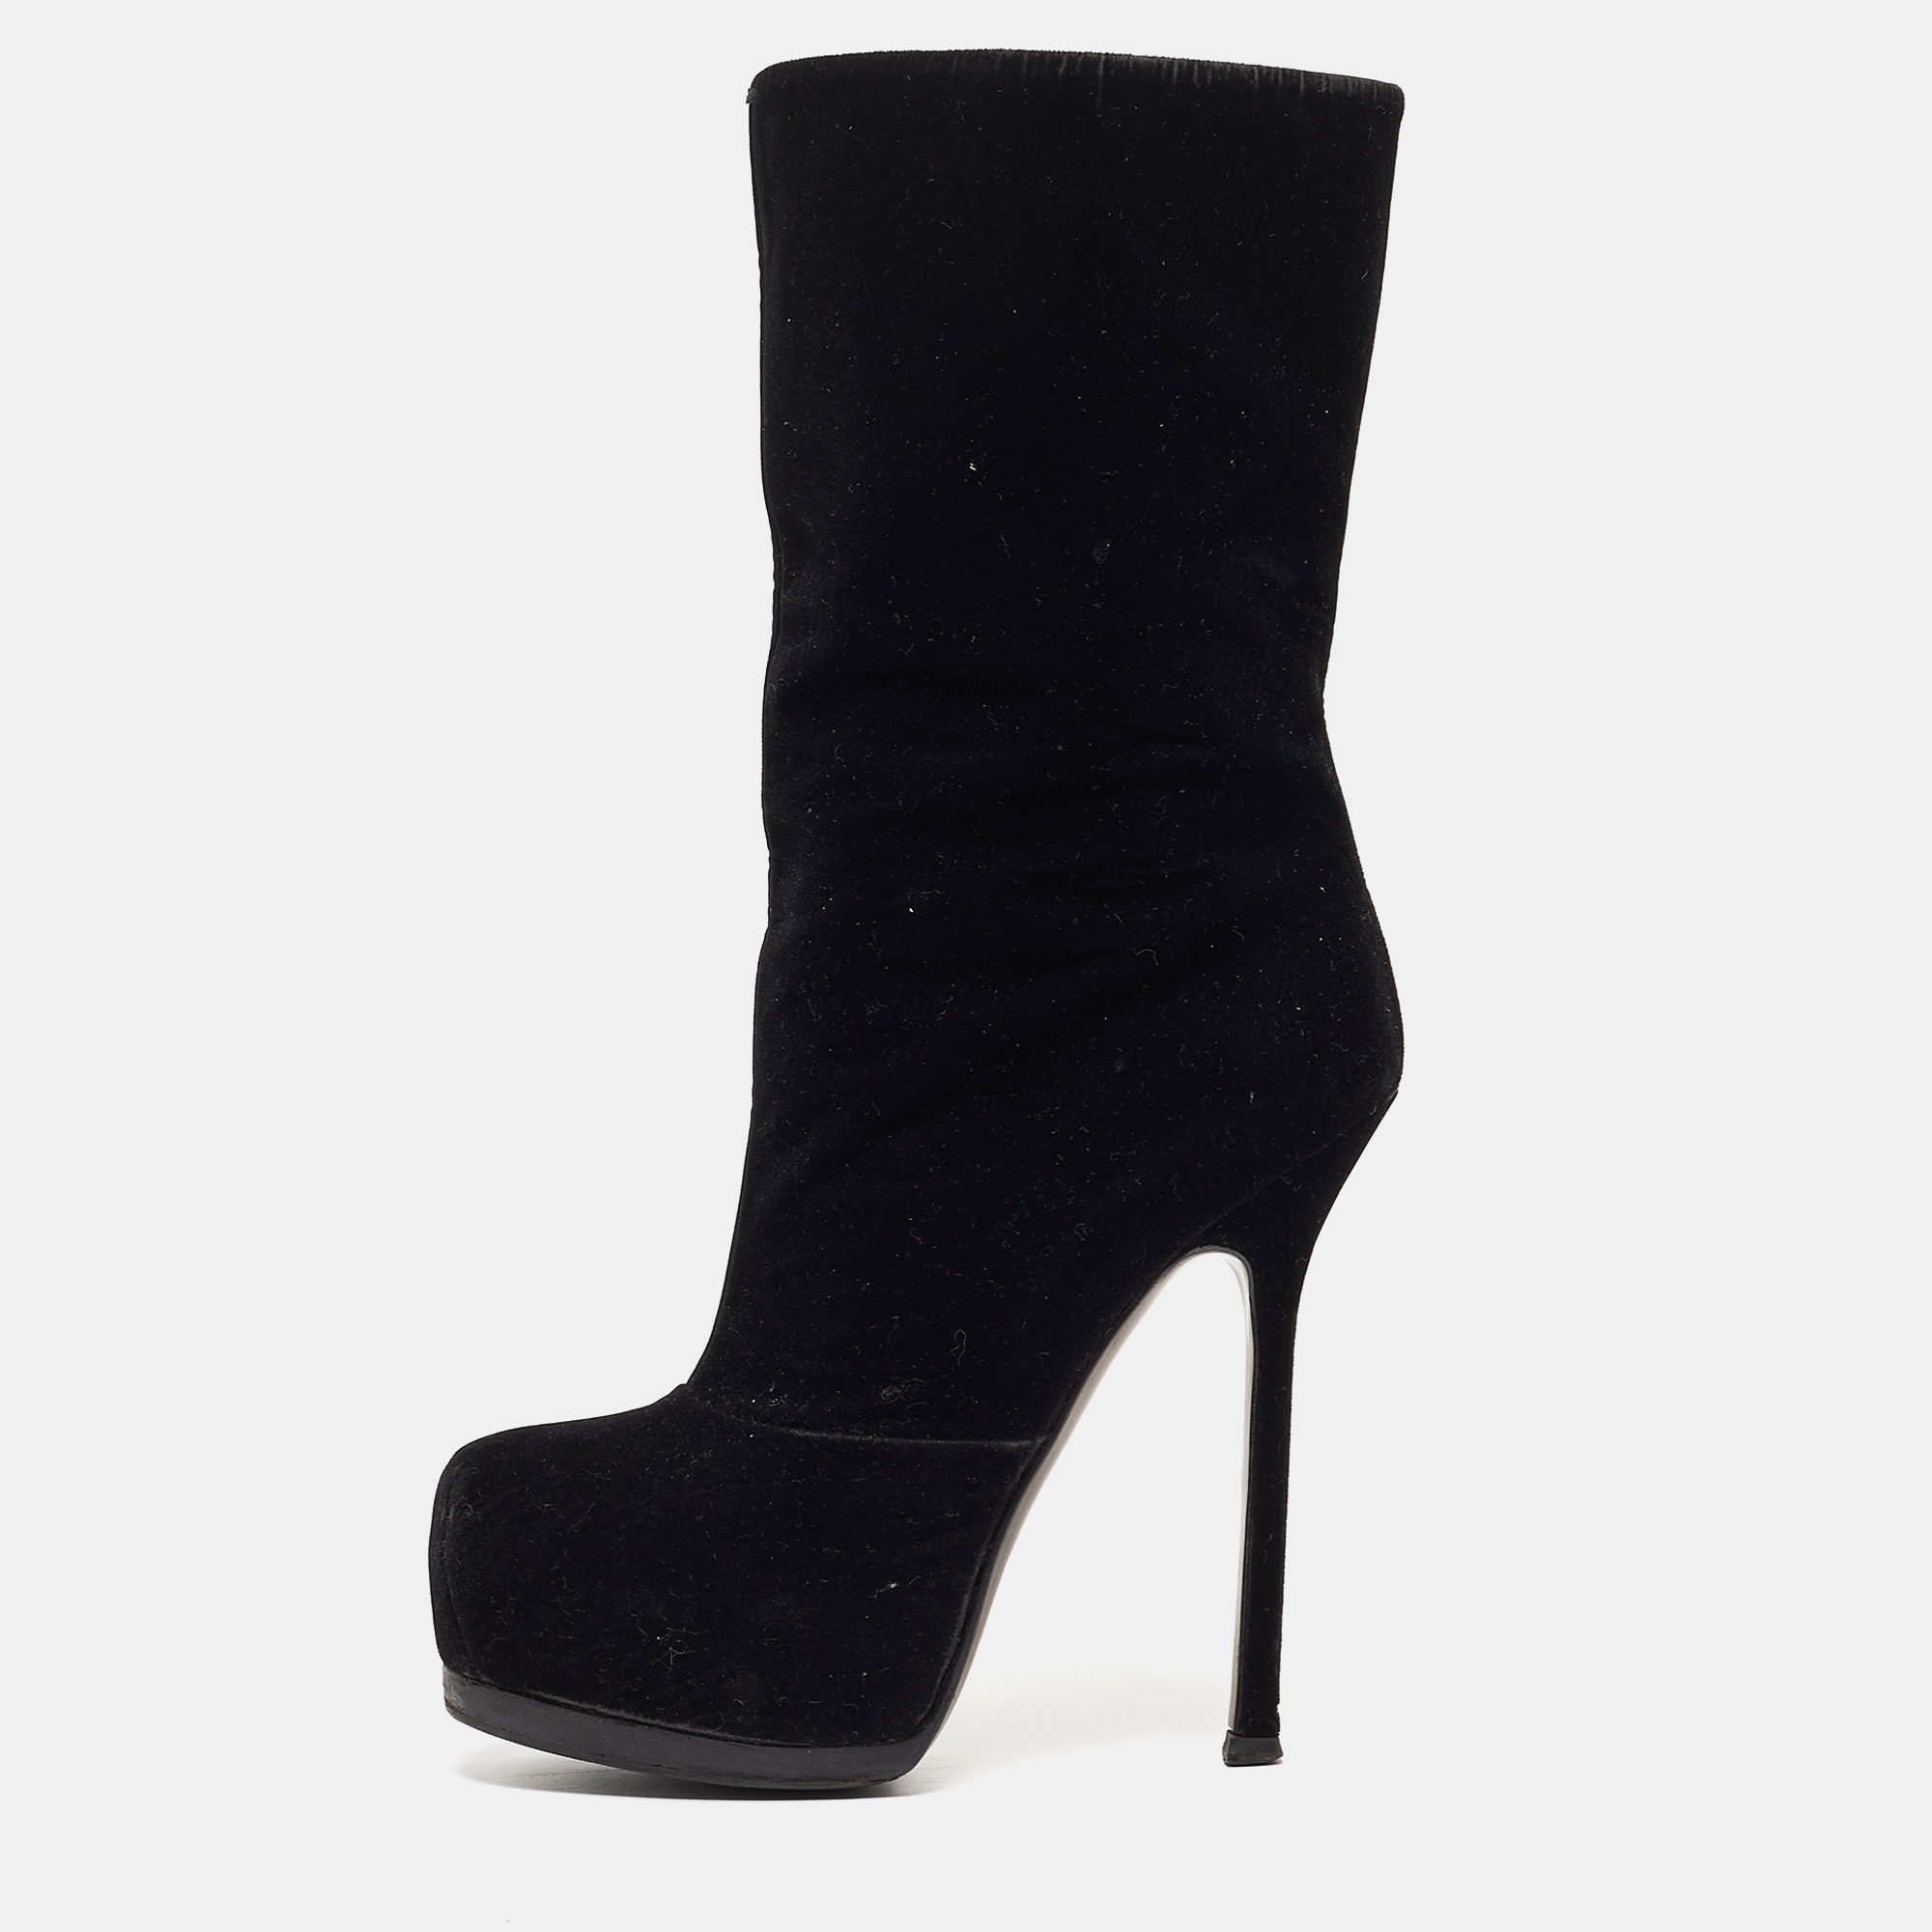 Yves saint laurent black velvet ankle boots size 36